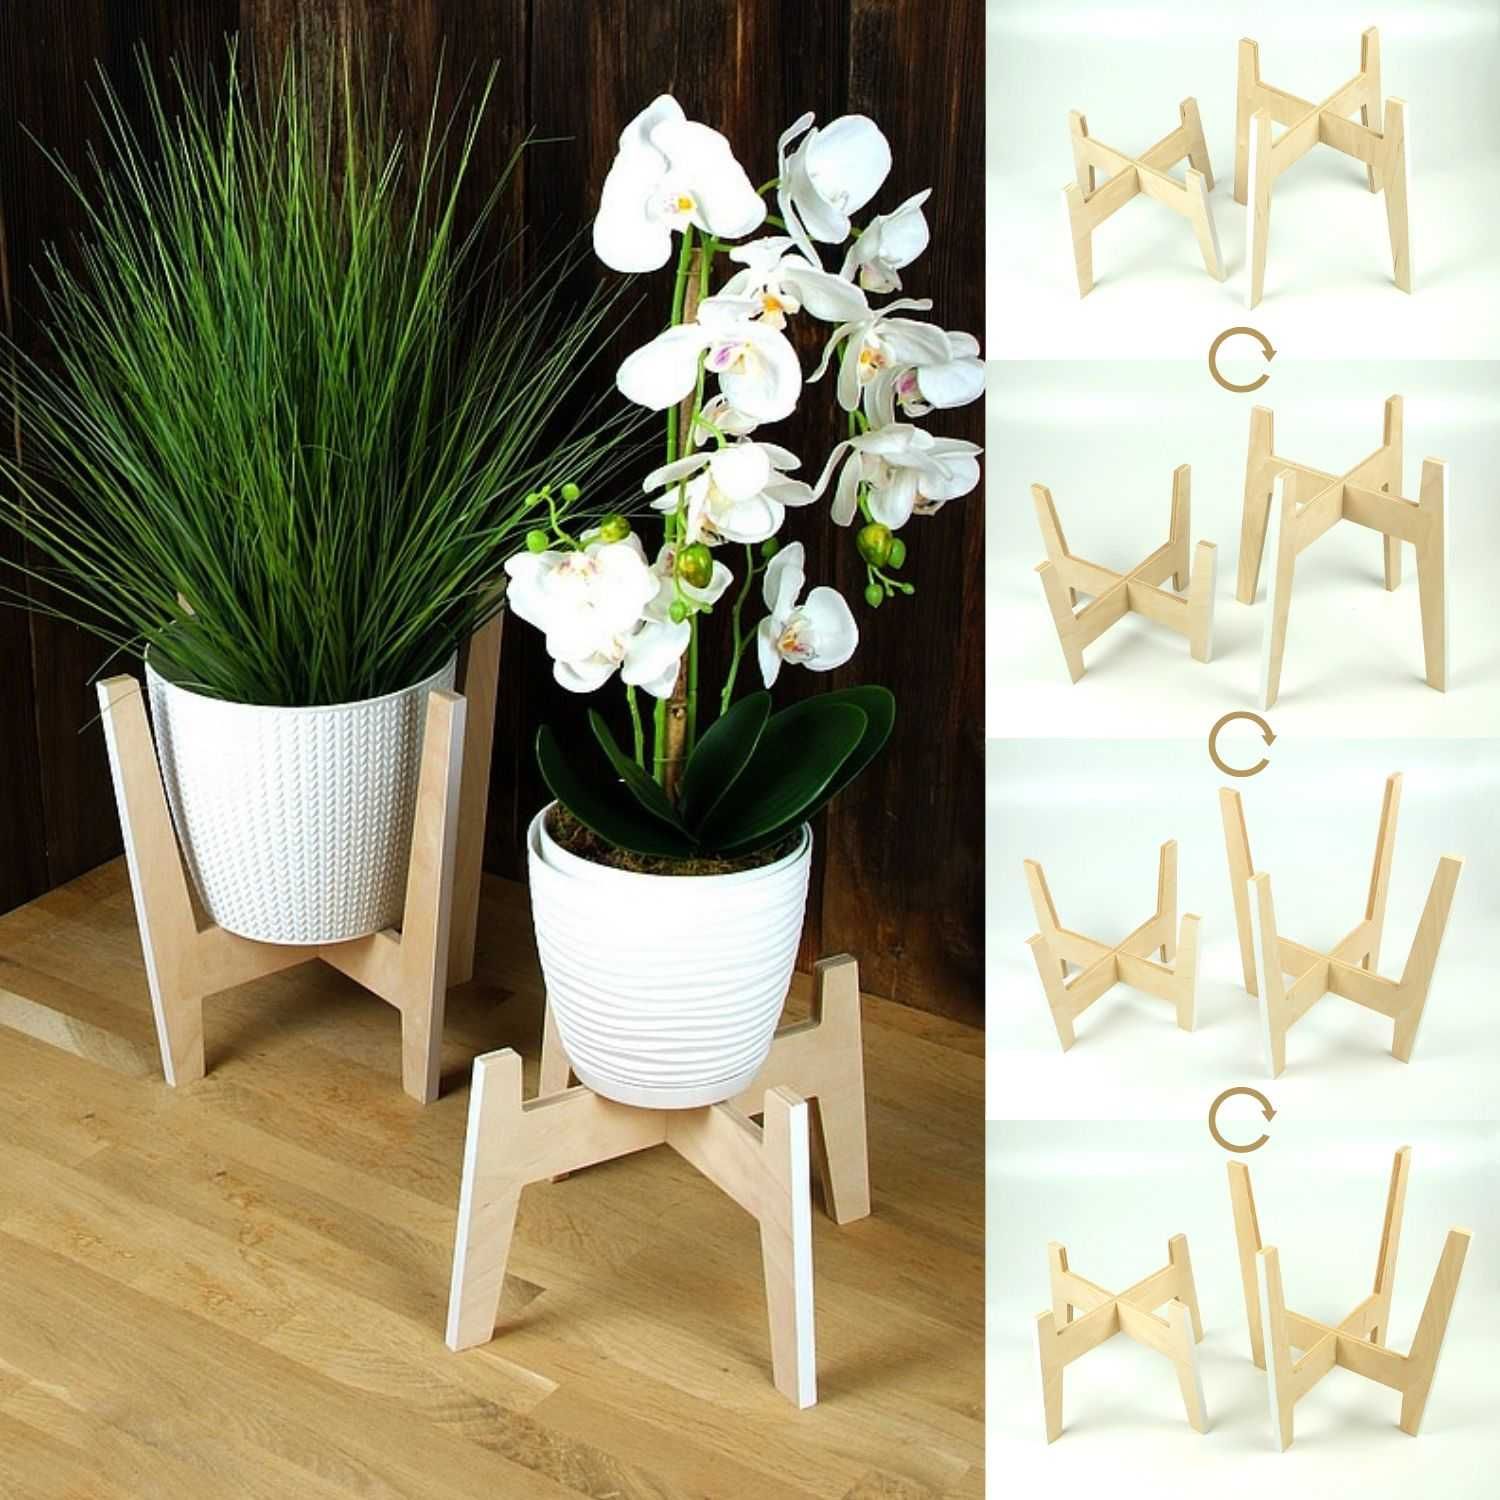 Drewniany stojak na rośliny / kwietnik z białymi krawędziami - zestaw.